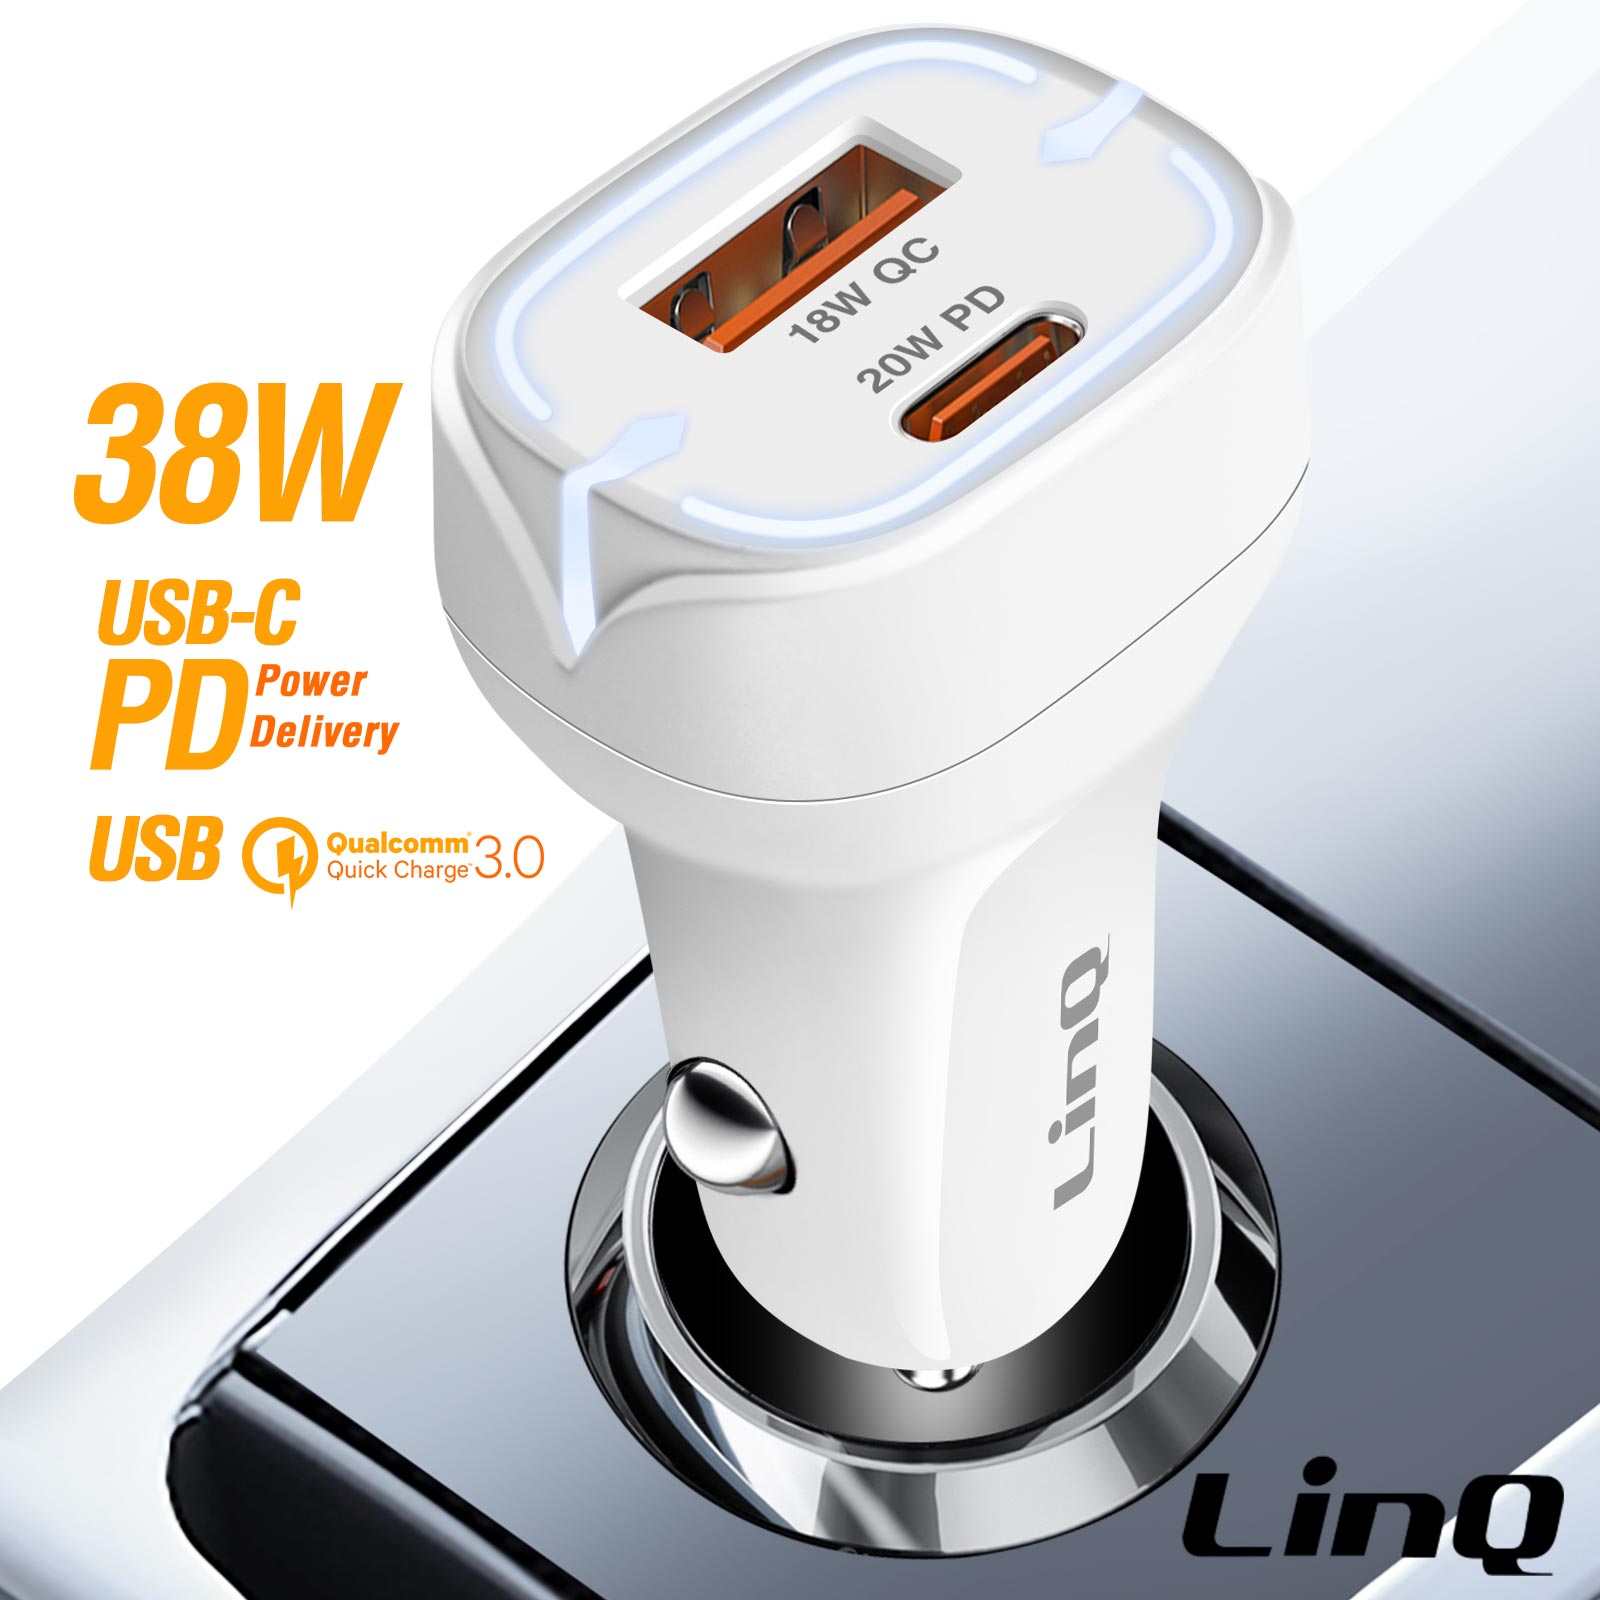 Caricatore accendisigari 38W, USB-C e USB 3.0 + illuminazione LED, LinQ -  bianco - Italiano